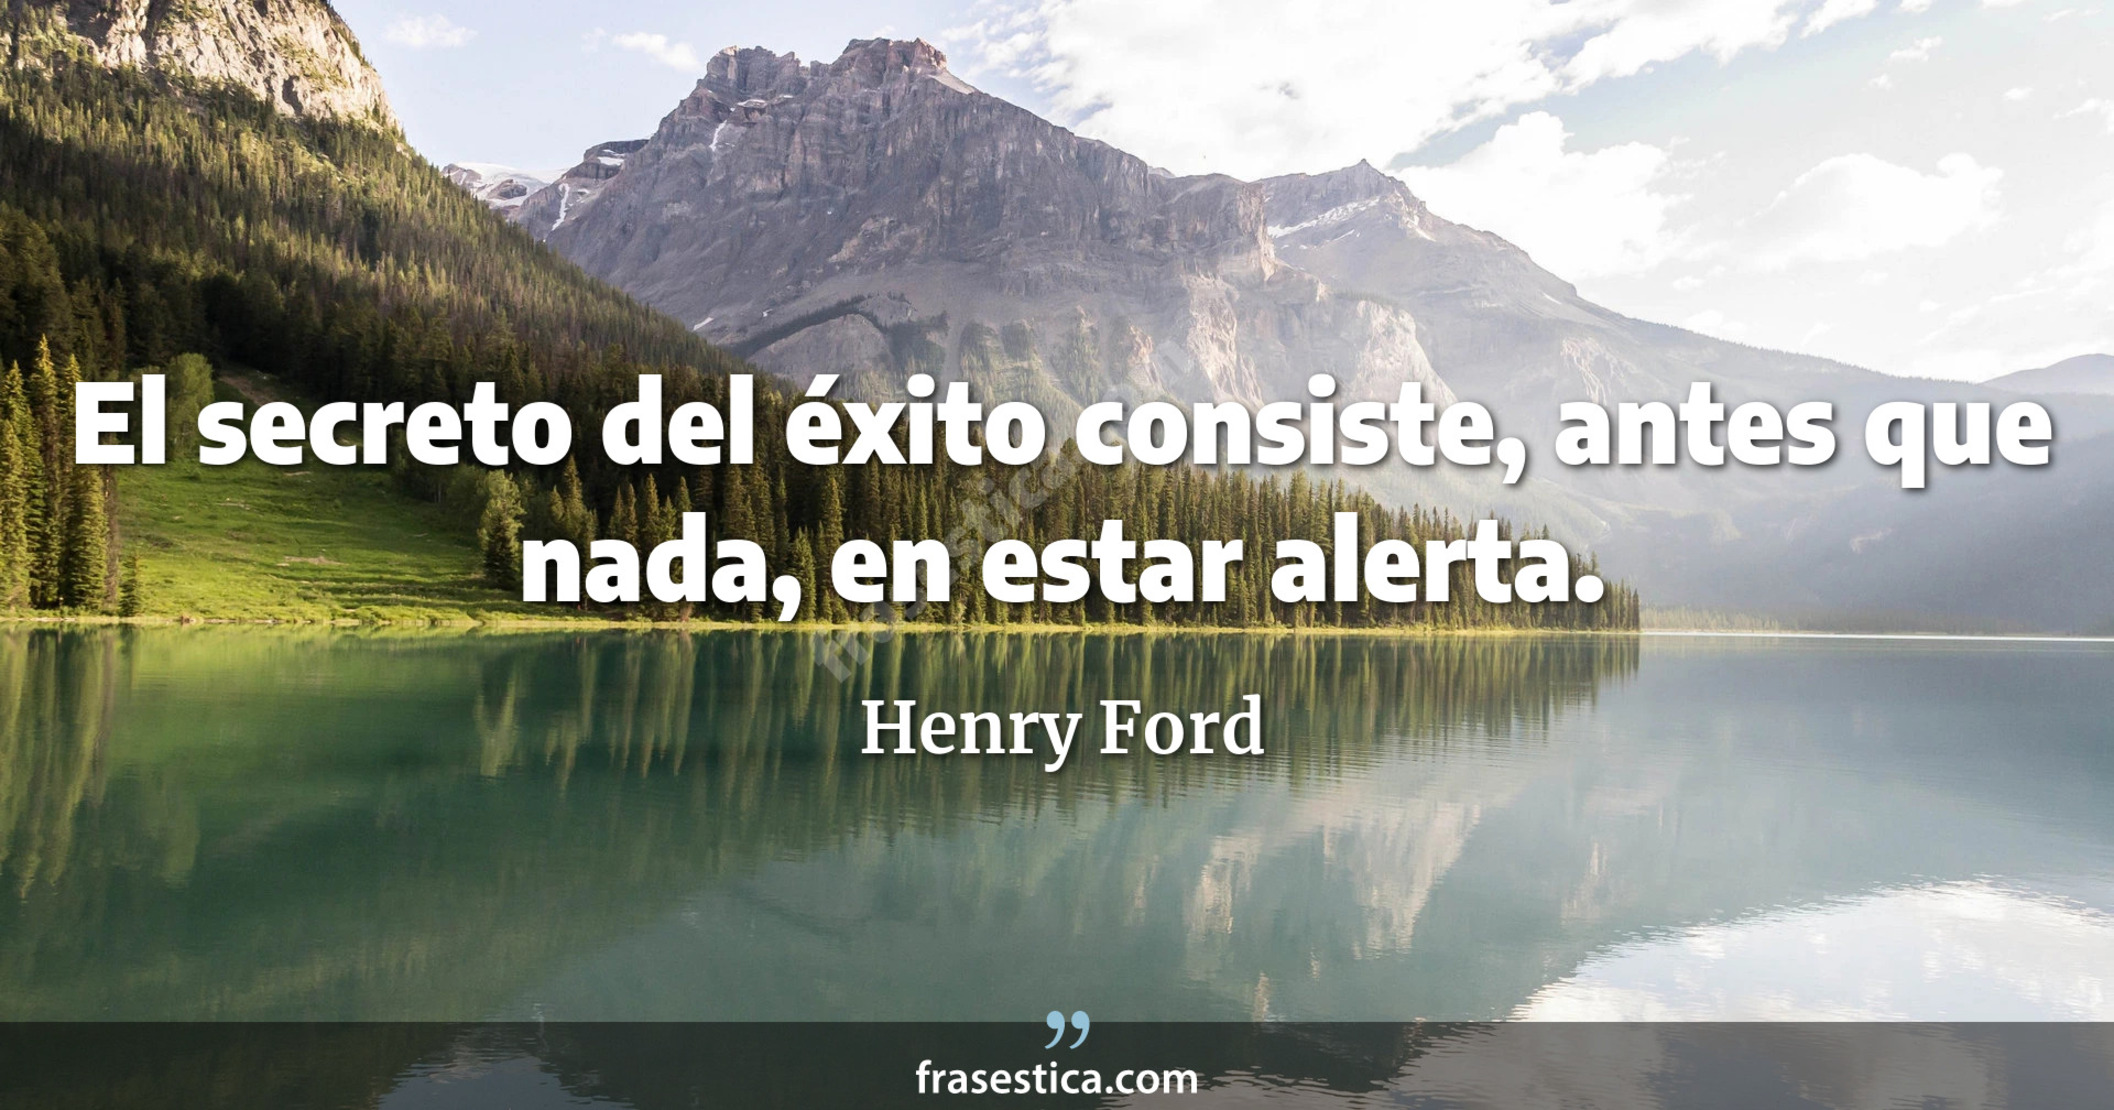 El secreto del éxito consiste, antes que nada, en estar alerta. - Henry Ford